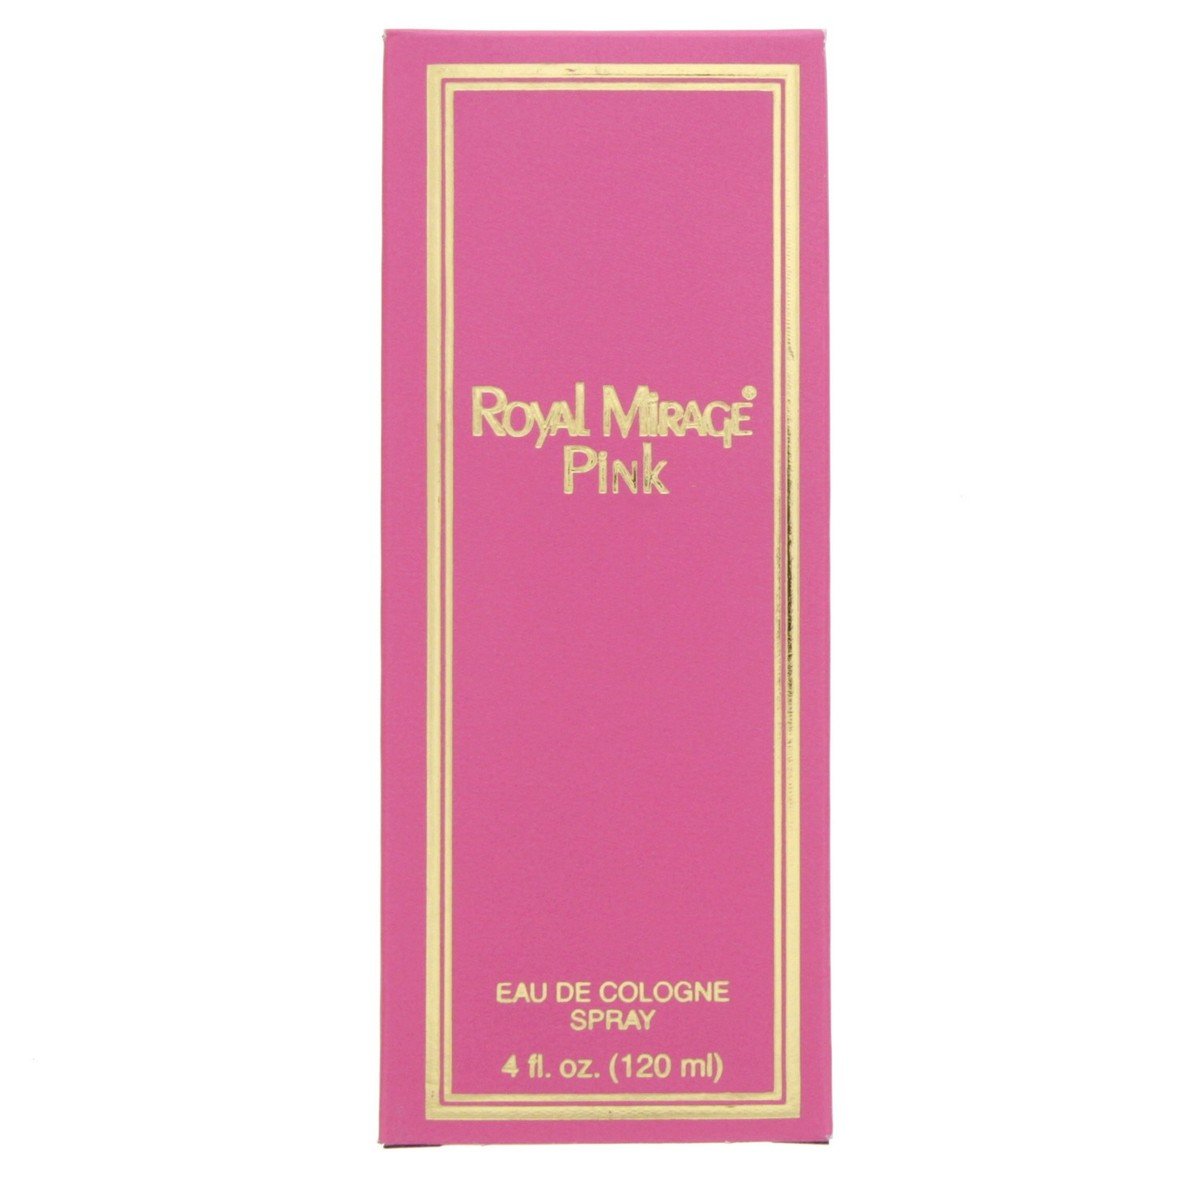 Royal Mirage Pink 120 ml